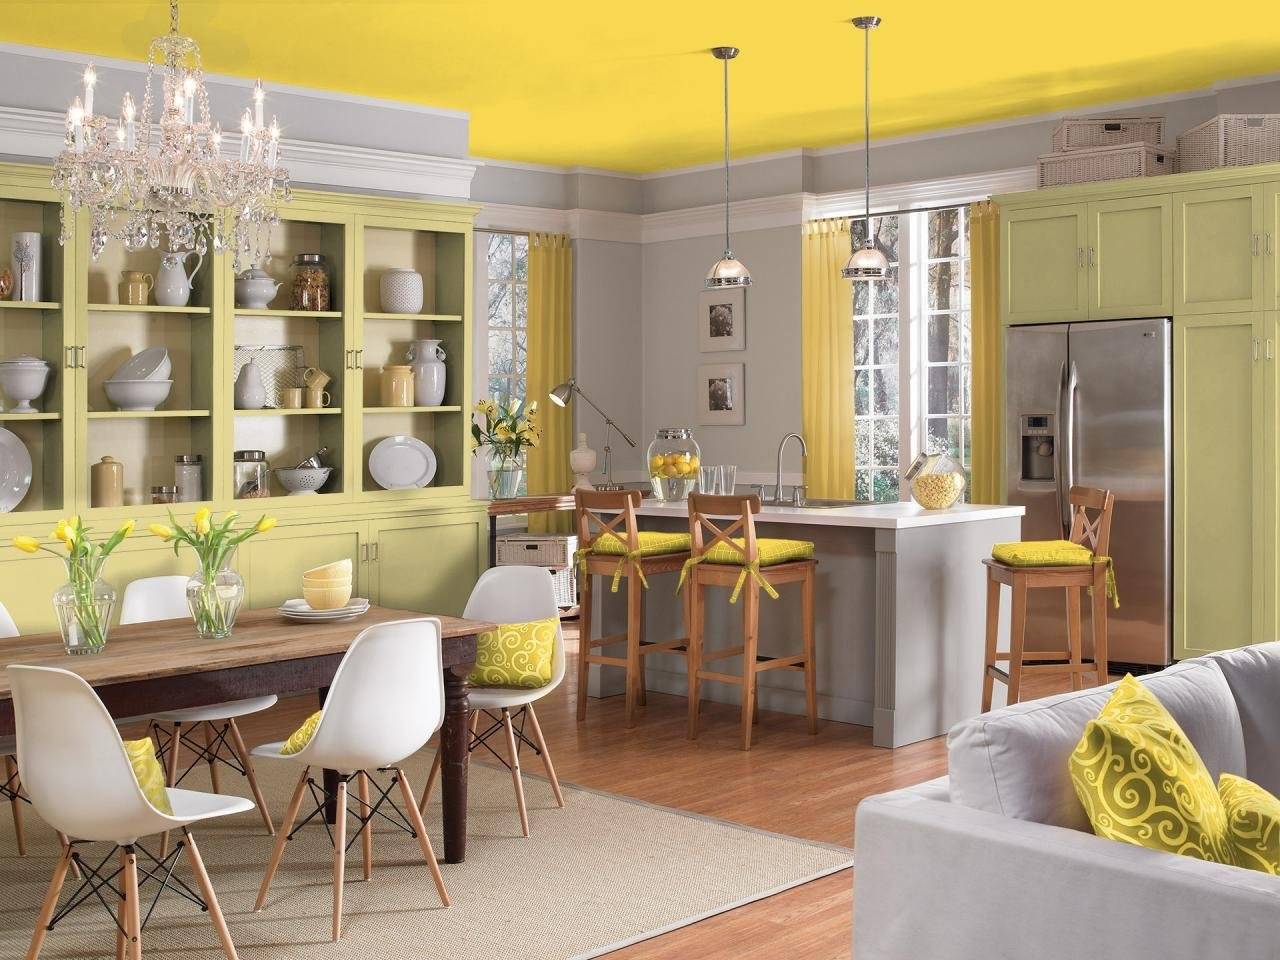 Горчично лимонный. Желтая кухня в интерьере. Лимонный цвет в интерьере кухни. Желтые стены на кухне. Кухня лимонного цвета.